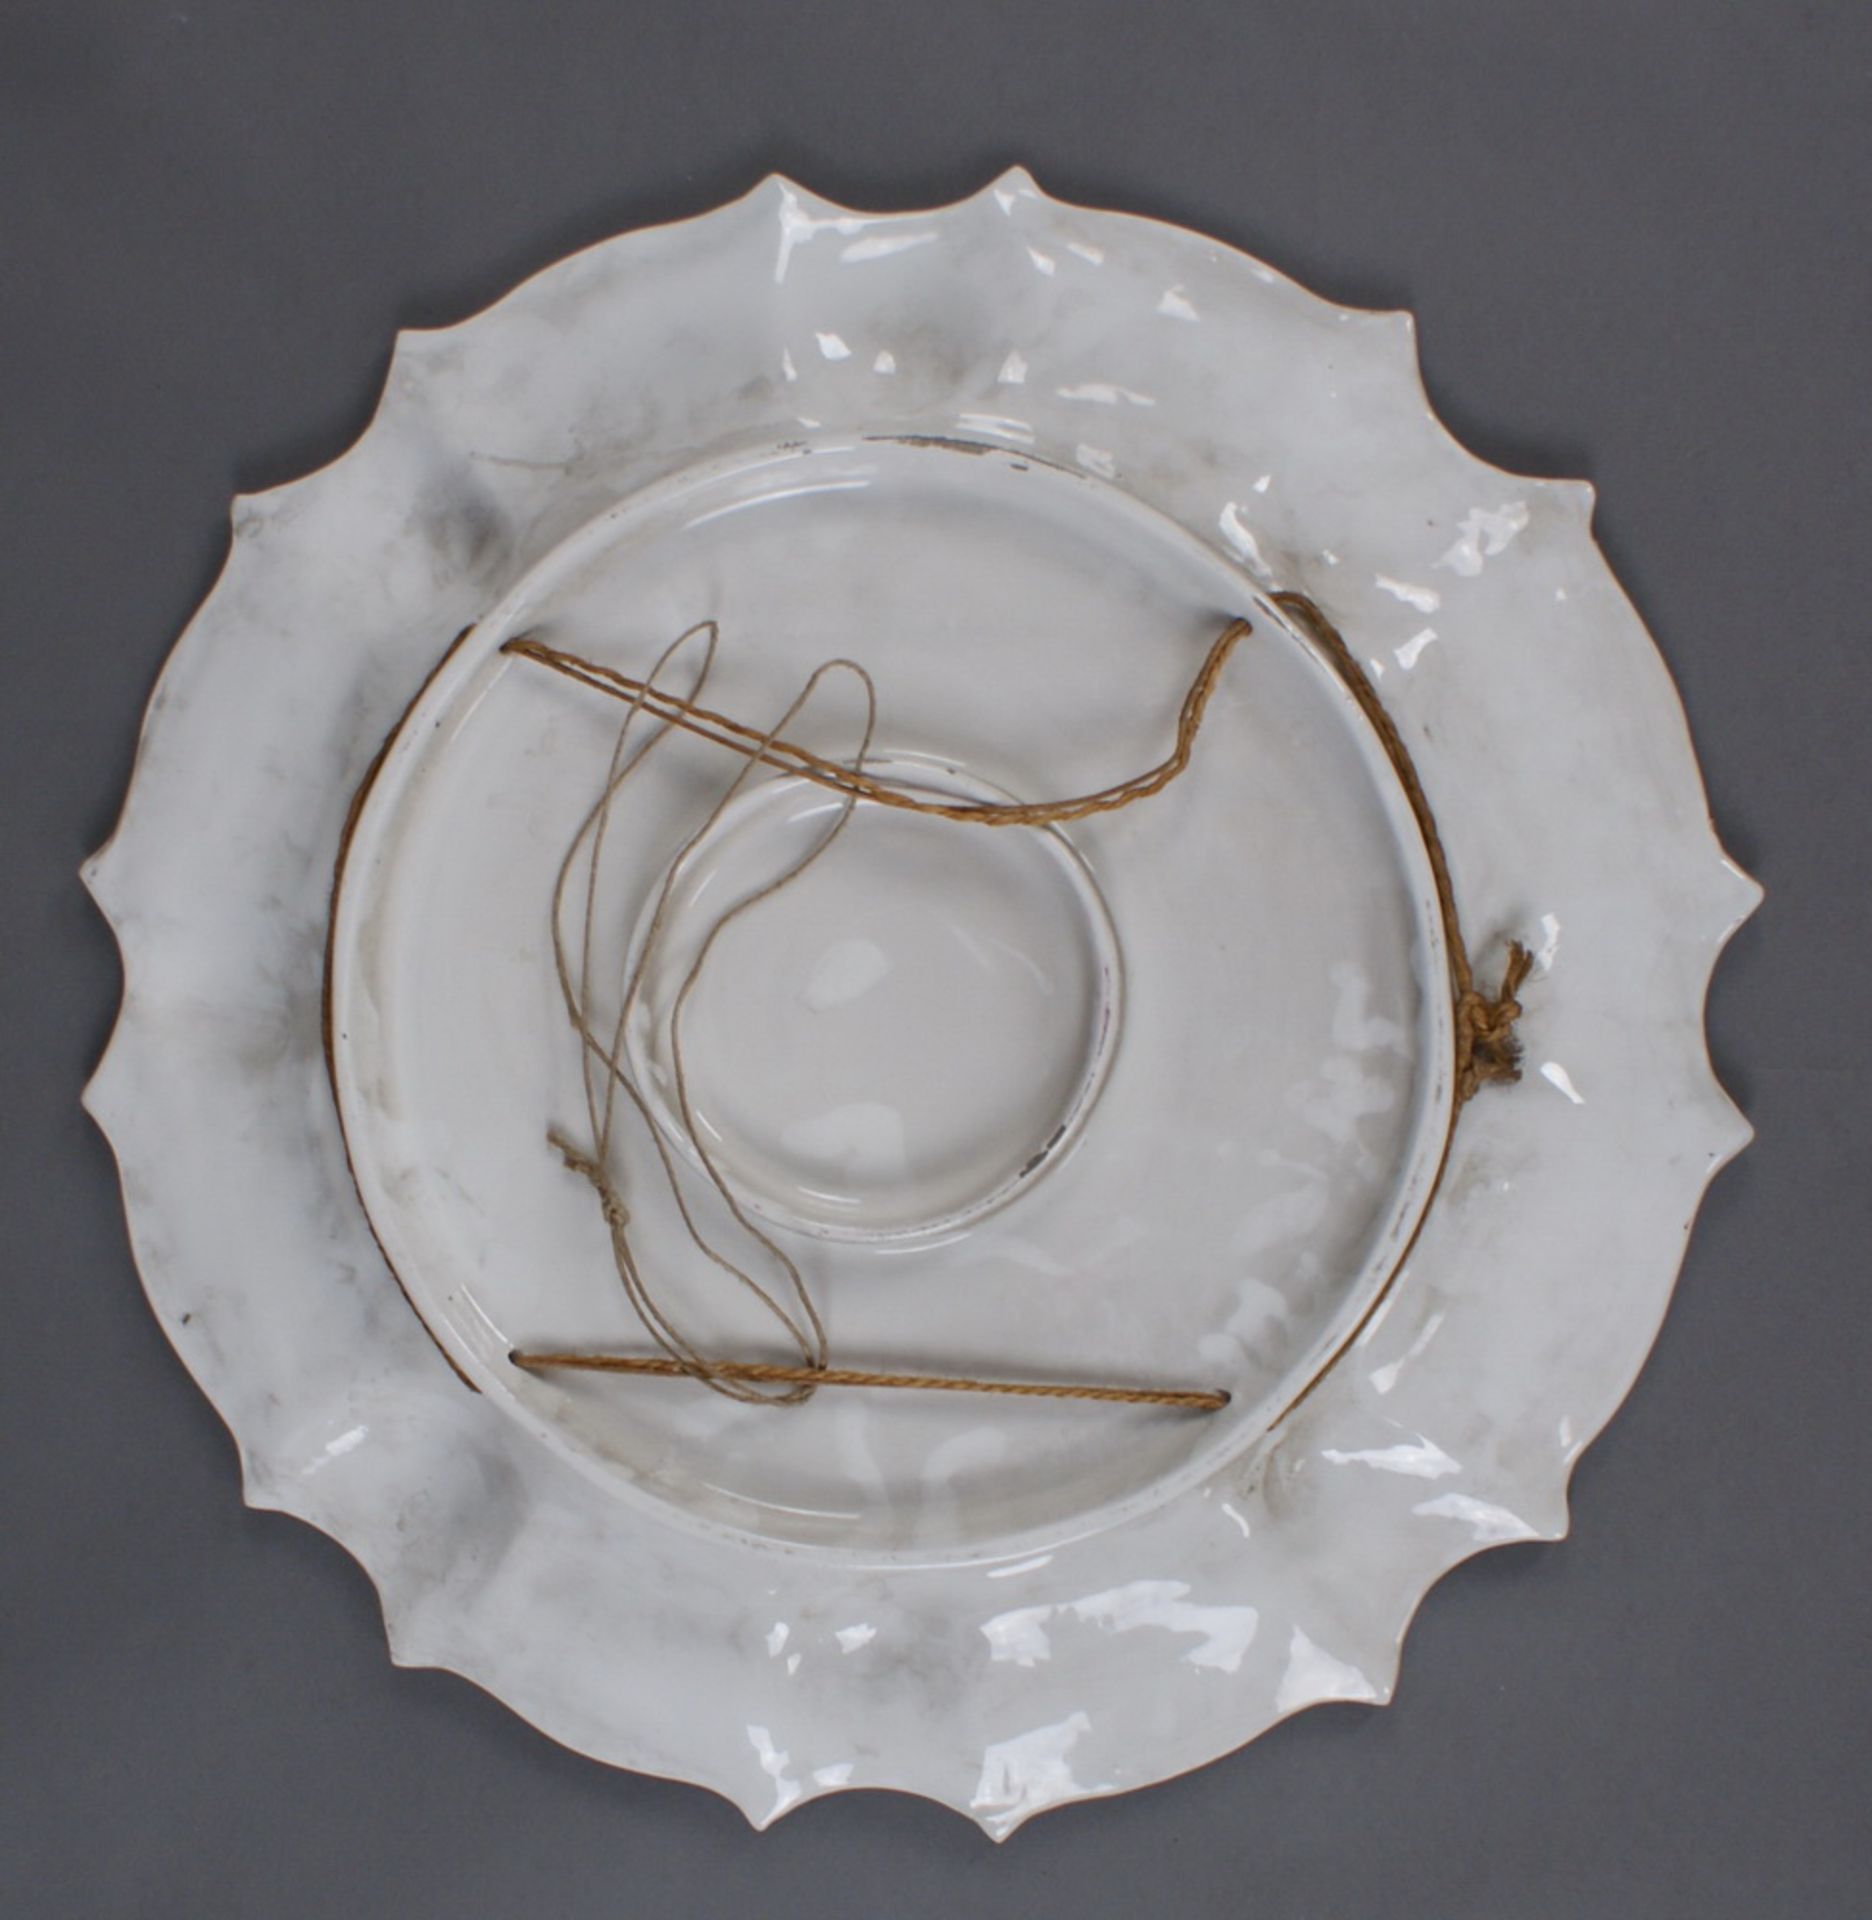 GROSSER SCHAUTELLER Keramik, bunt glasiert, Rückseitig bezeichnet, Durchmesser 57 cm - Bild 6 aus 6